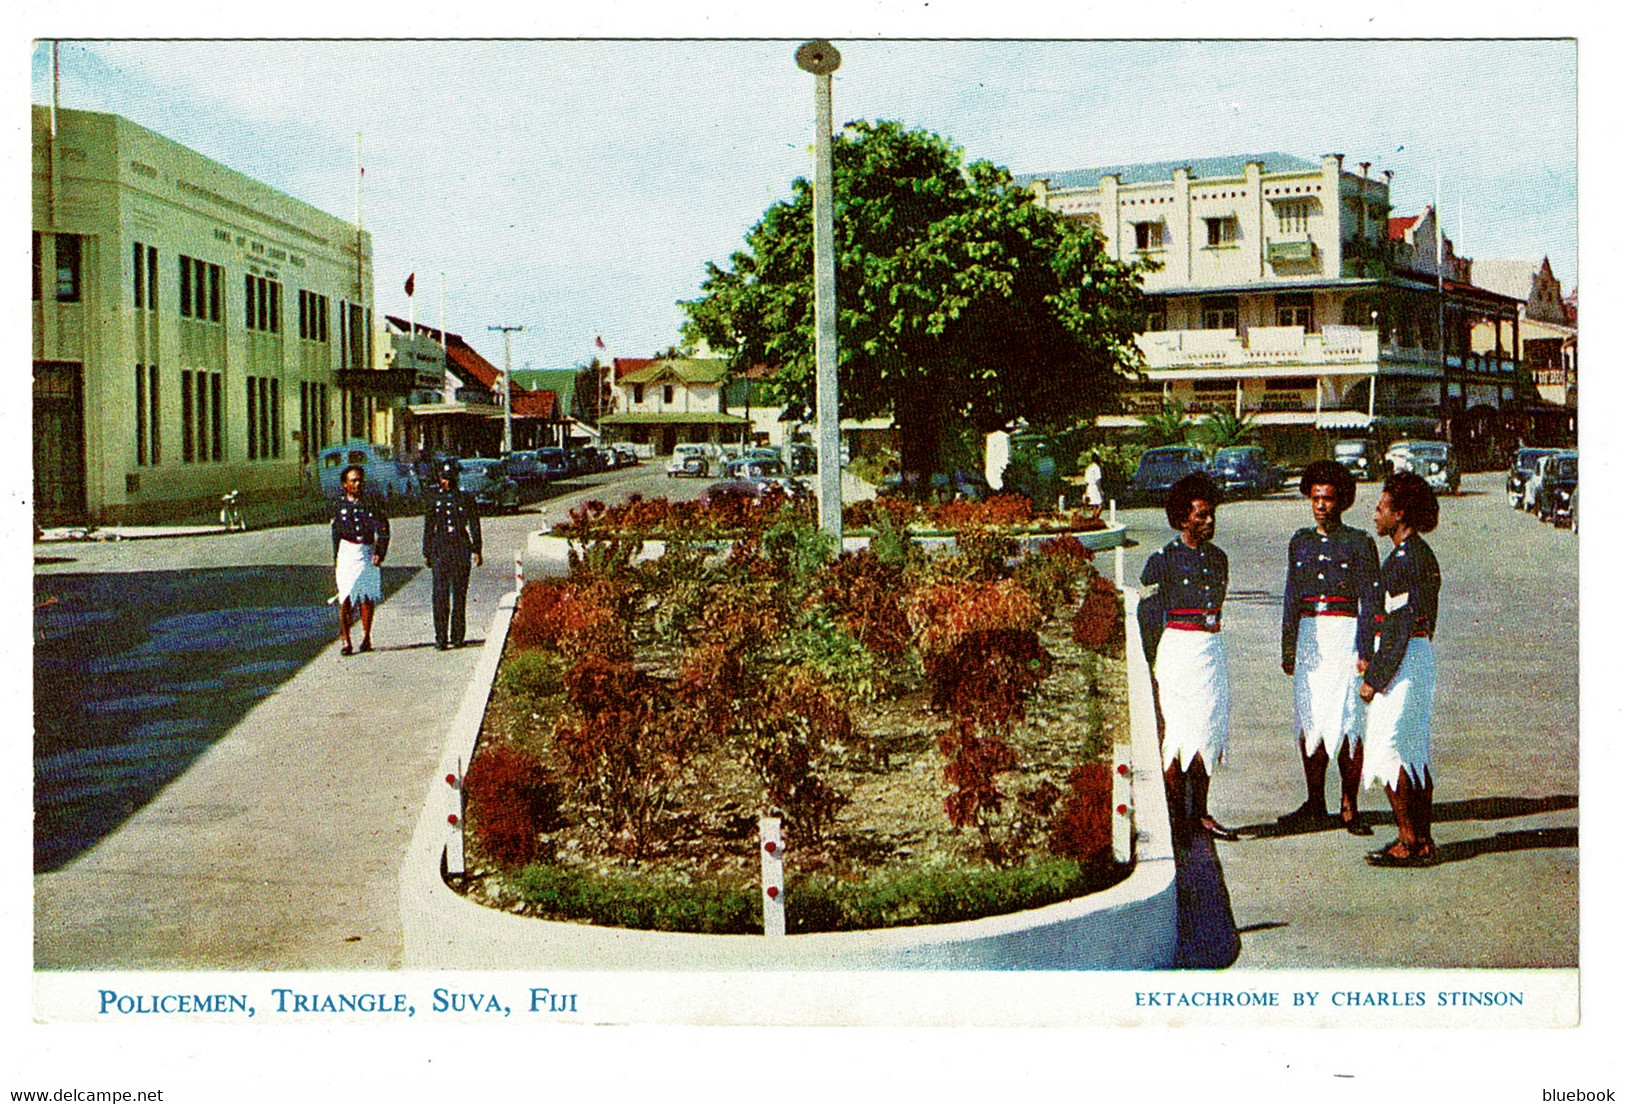 Ref 1498 - Stinson Postcard - Policemen At Suva Triangle Fiji - Pacific Islands - Fiji